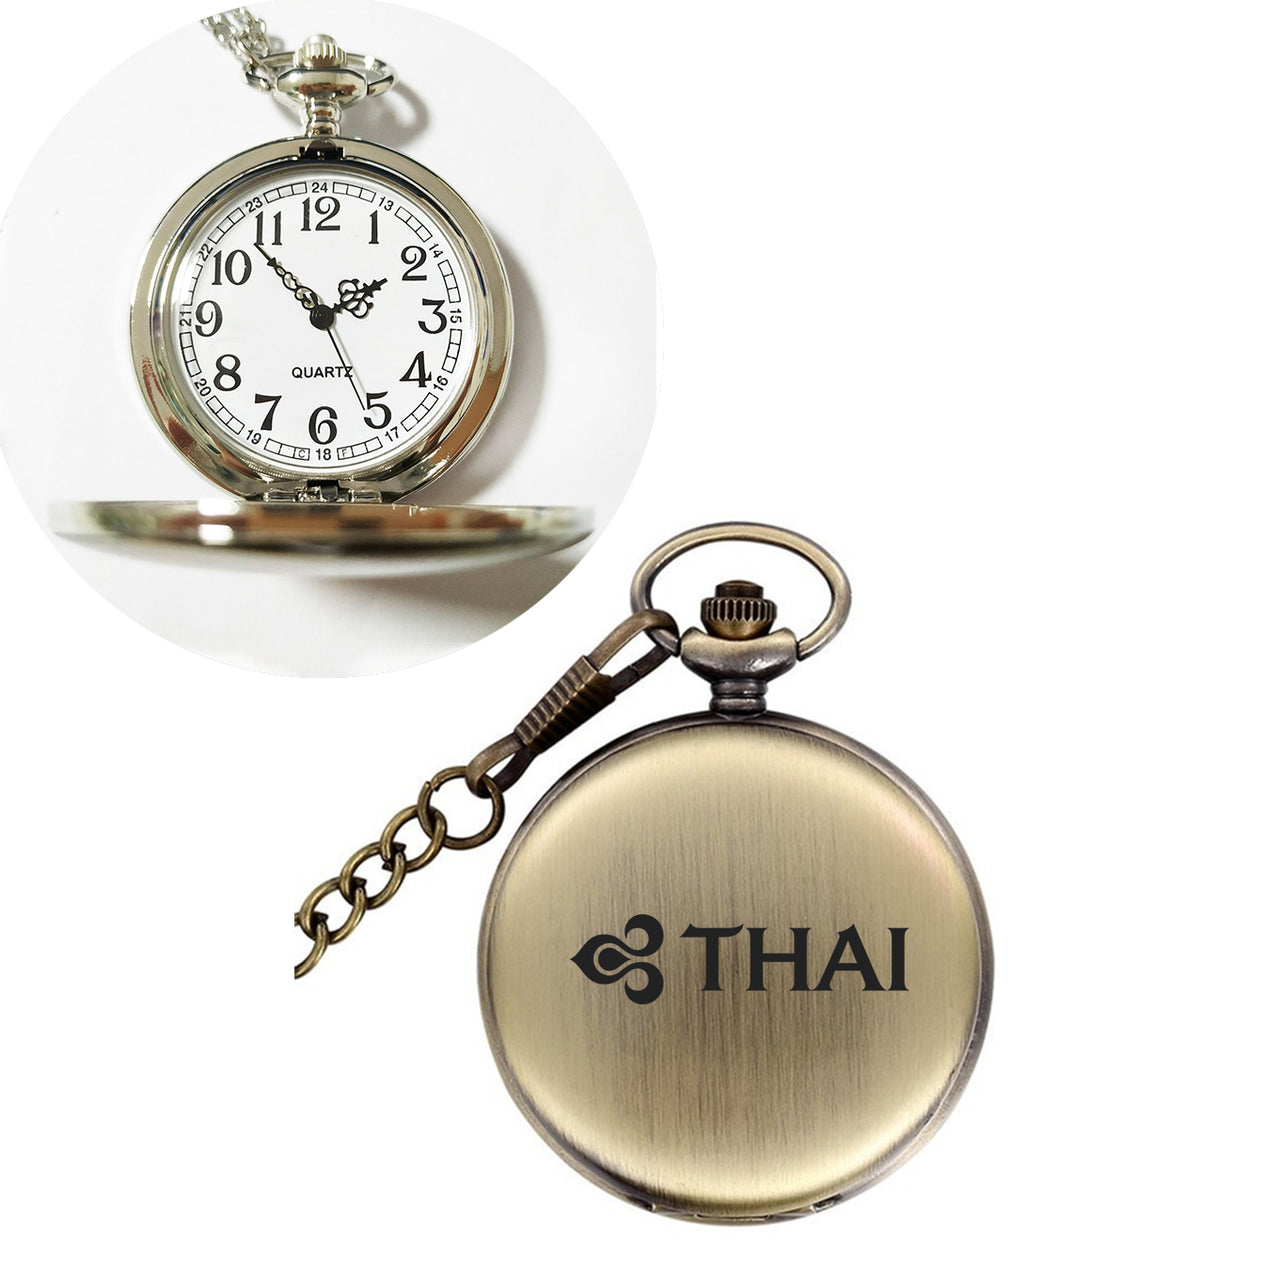 Thai Airways Designed Pocket Watches